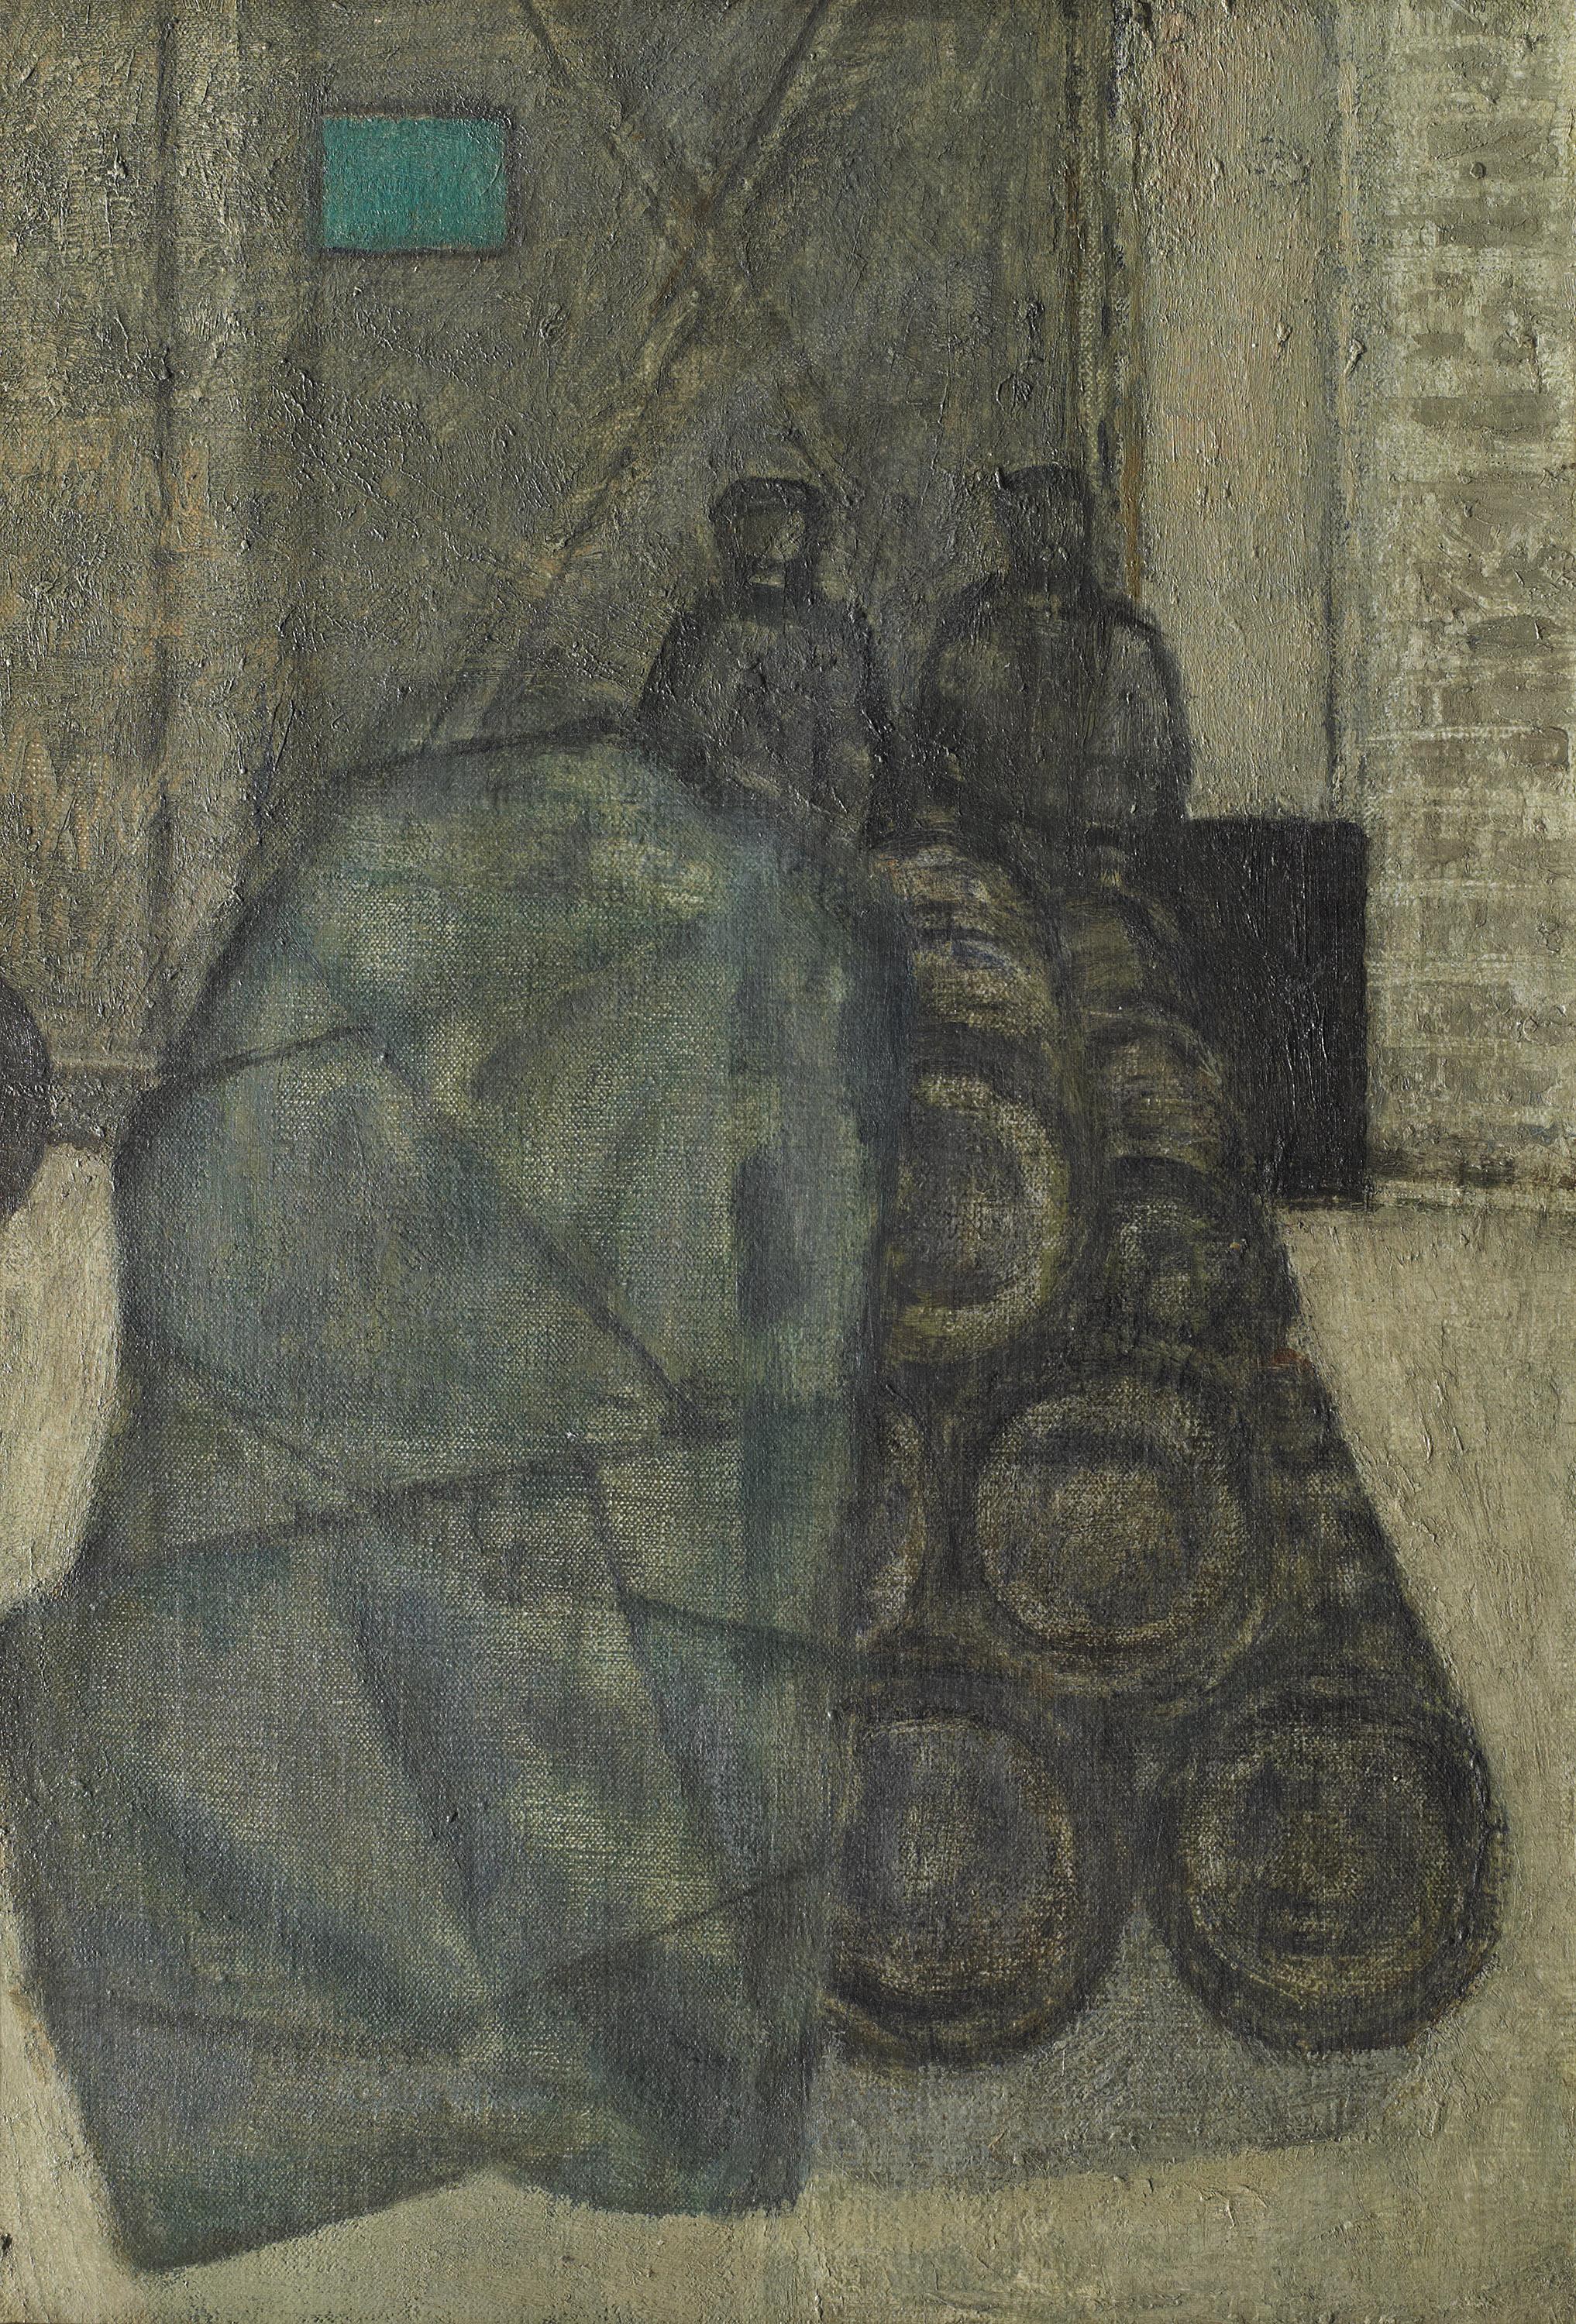 Barrels in a Yard - 20. Jahrhundert, Öl auf Leinwand von Prunella Clough